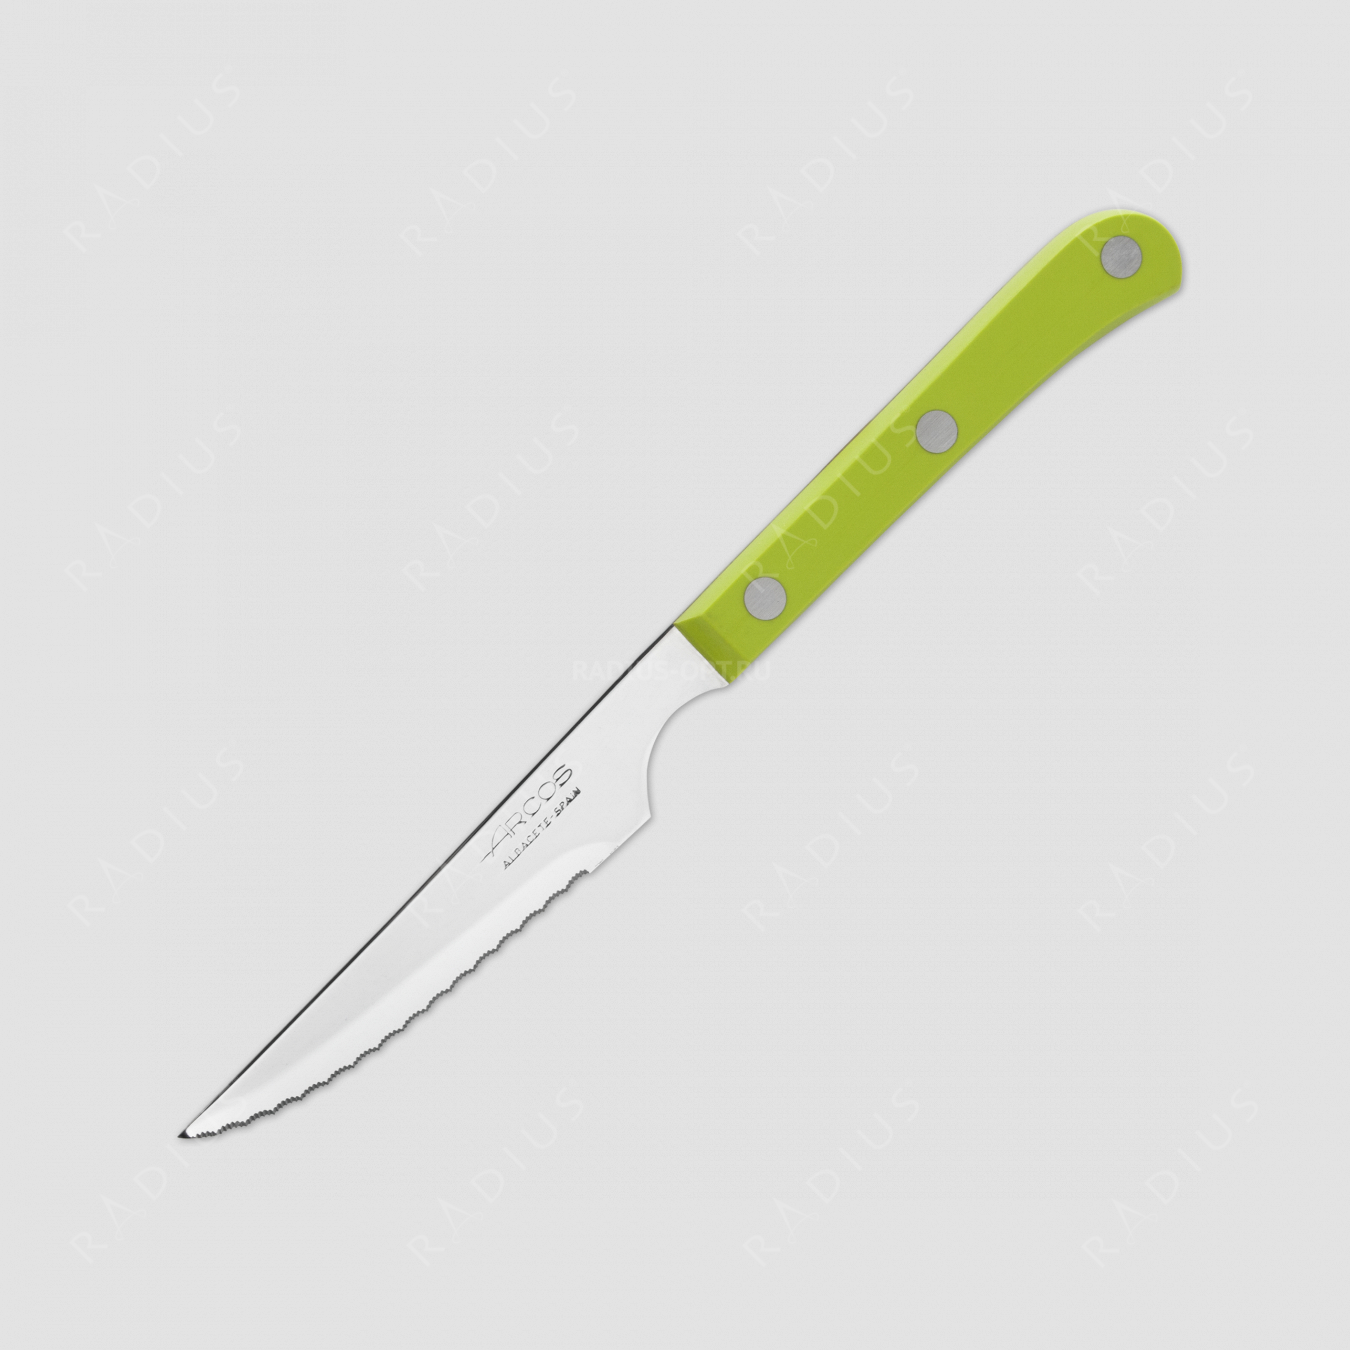 Нож кухонный для стейка 11,5 см, рукоять зеленая, Mesa, серия Mesa, ARCOS, Испания